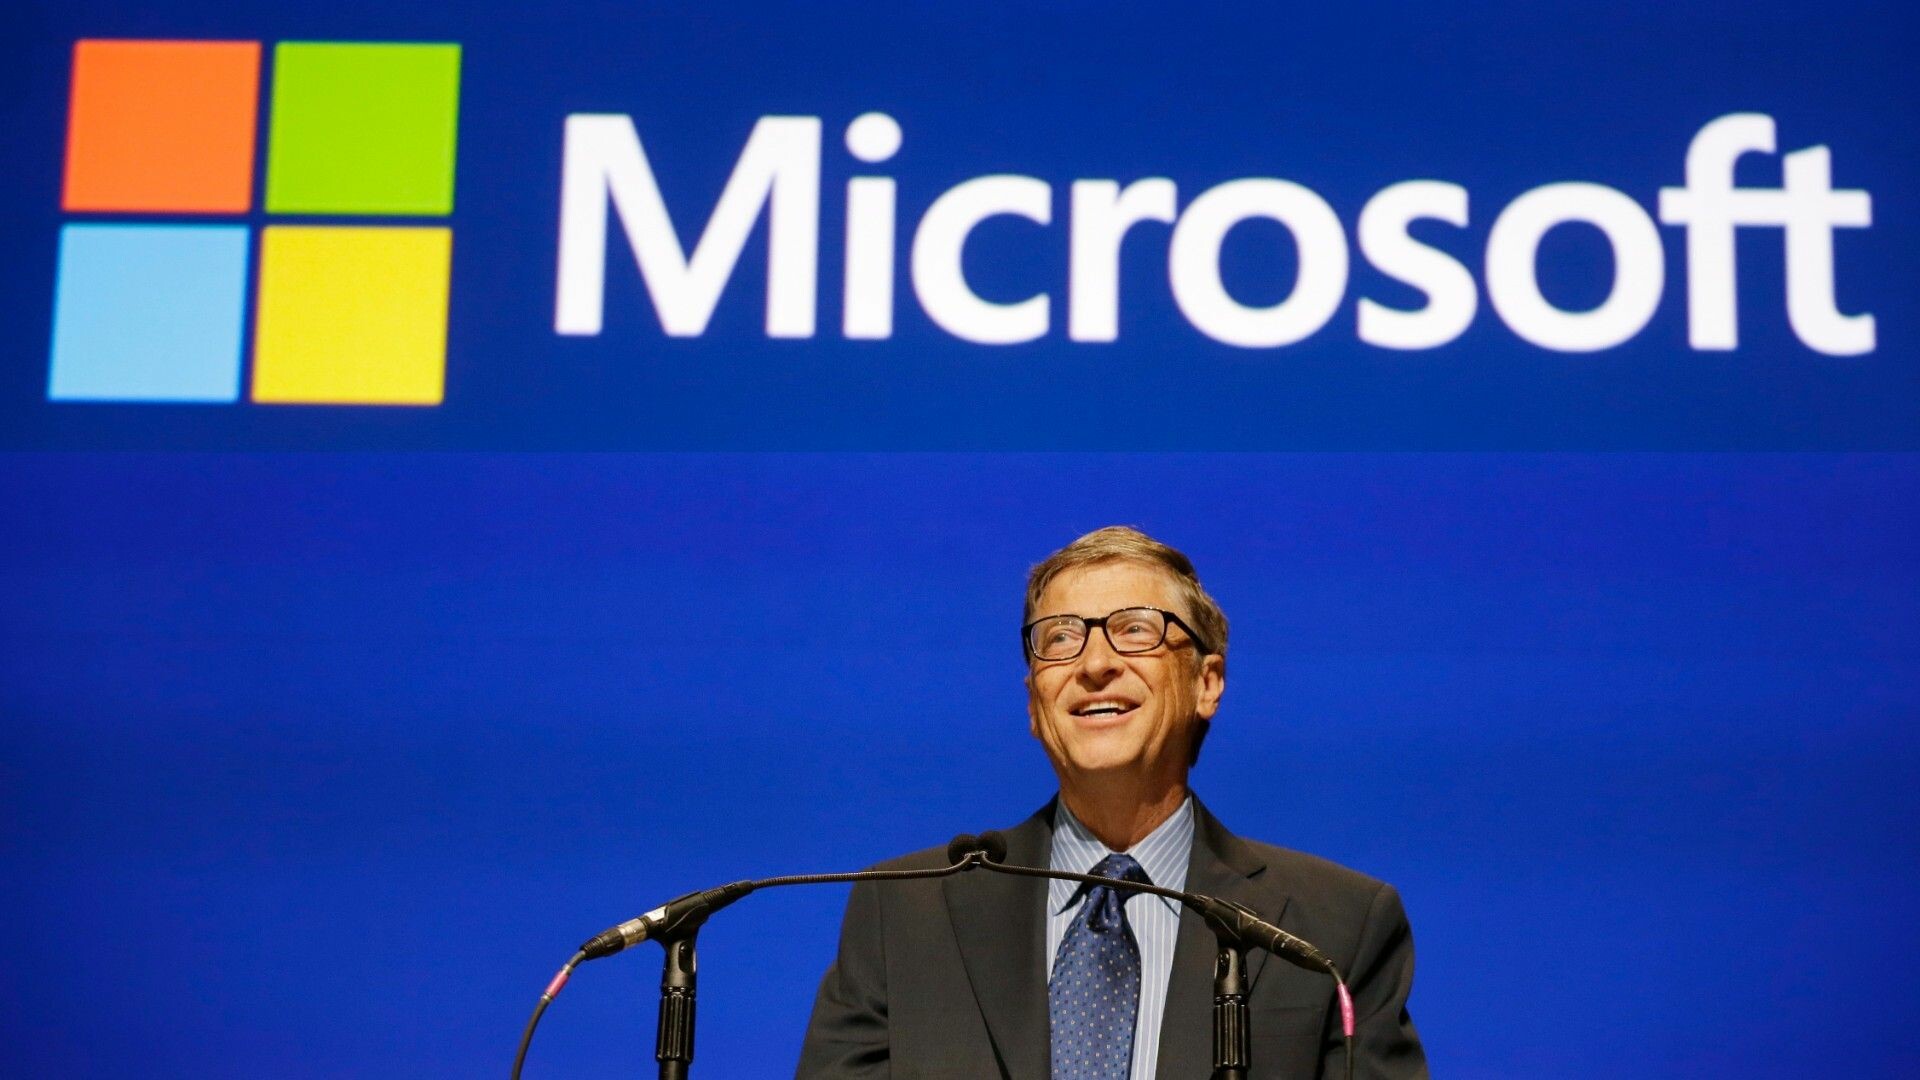 Bill Gates, Microsoft wallpapers, High-resolution backgrounds, Inspiring visuals, 1920x1080 Full HD Desktop